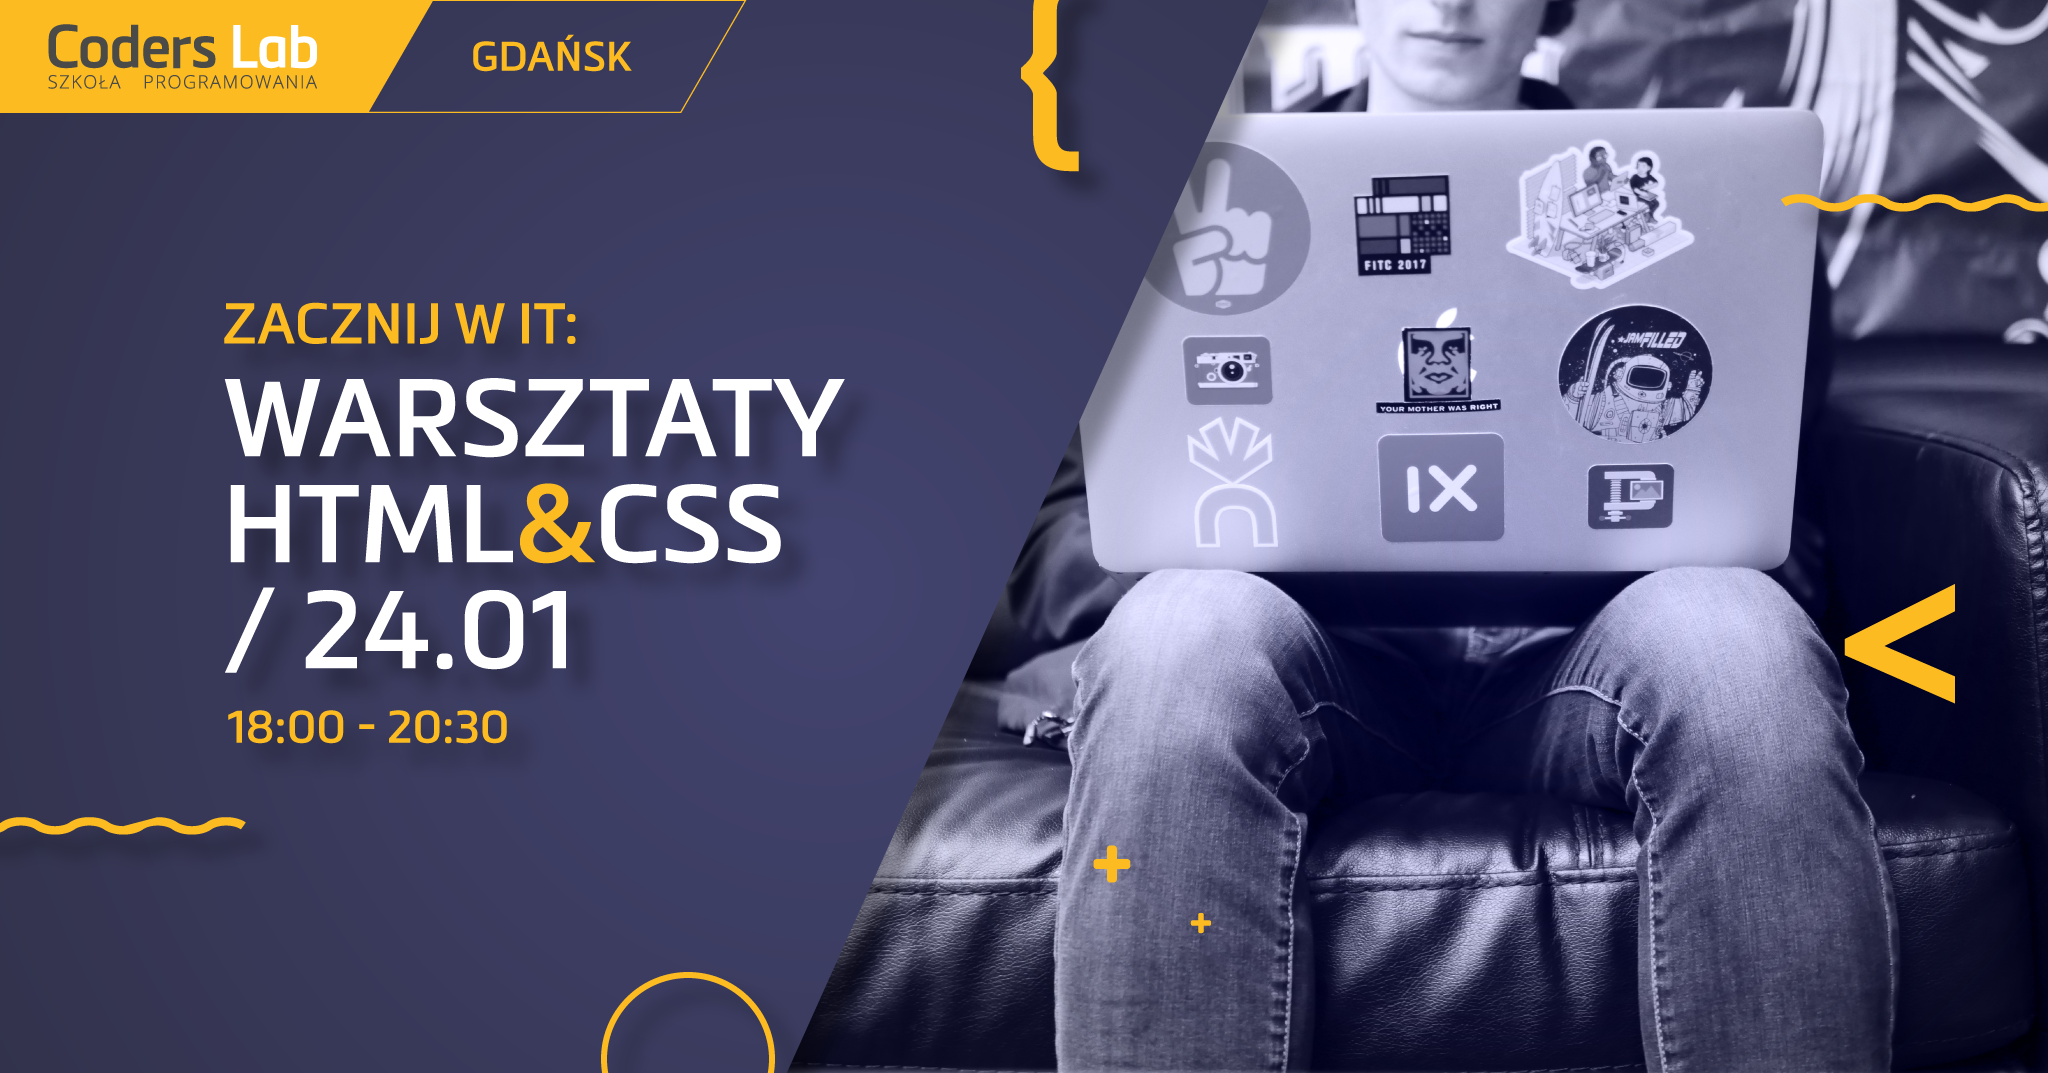 coders-lab-szkola-programowania-zacznij-w-it-warsztaty-html-i-css-w-gdansku-styczen-2018